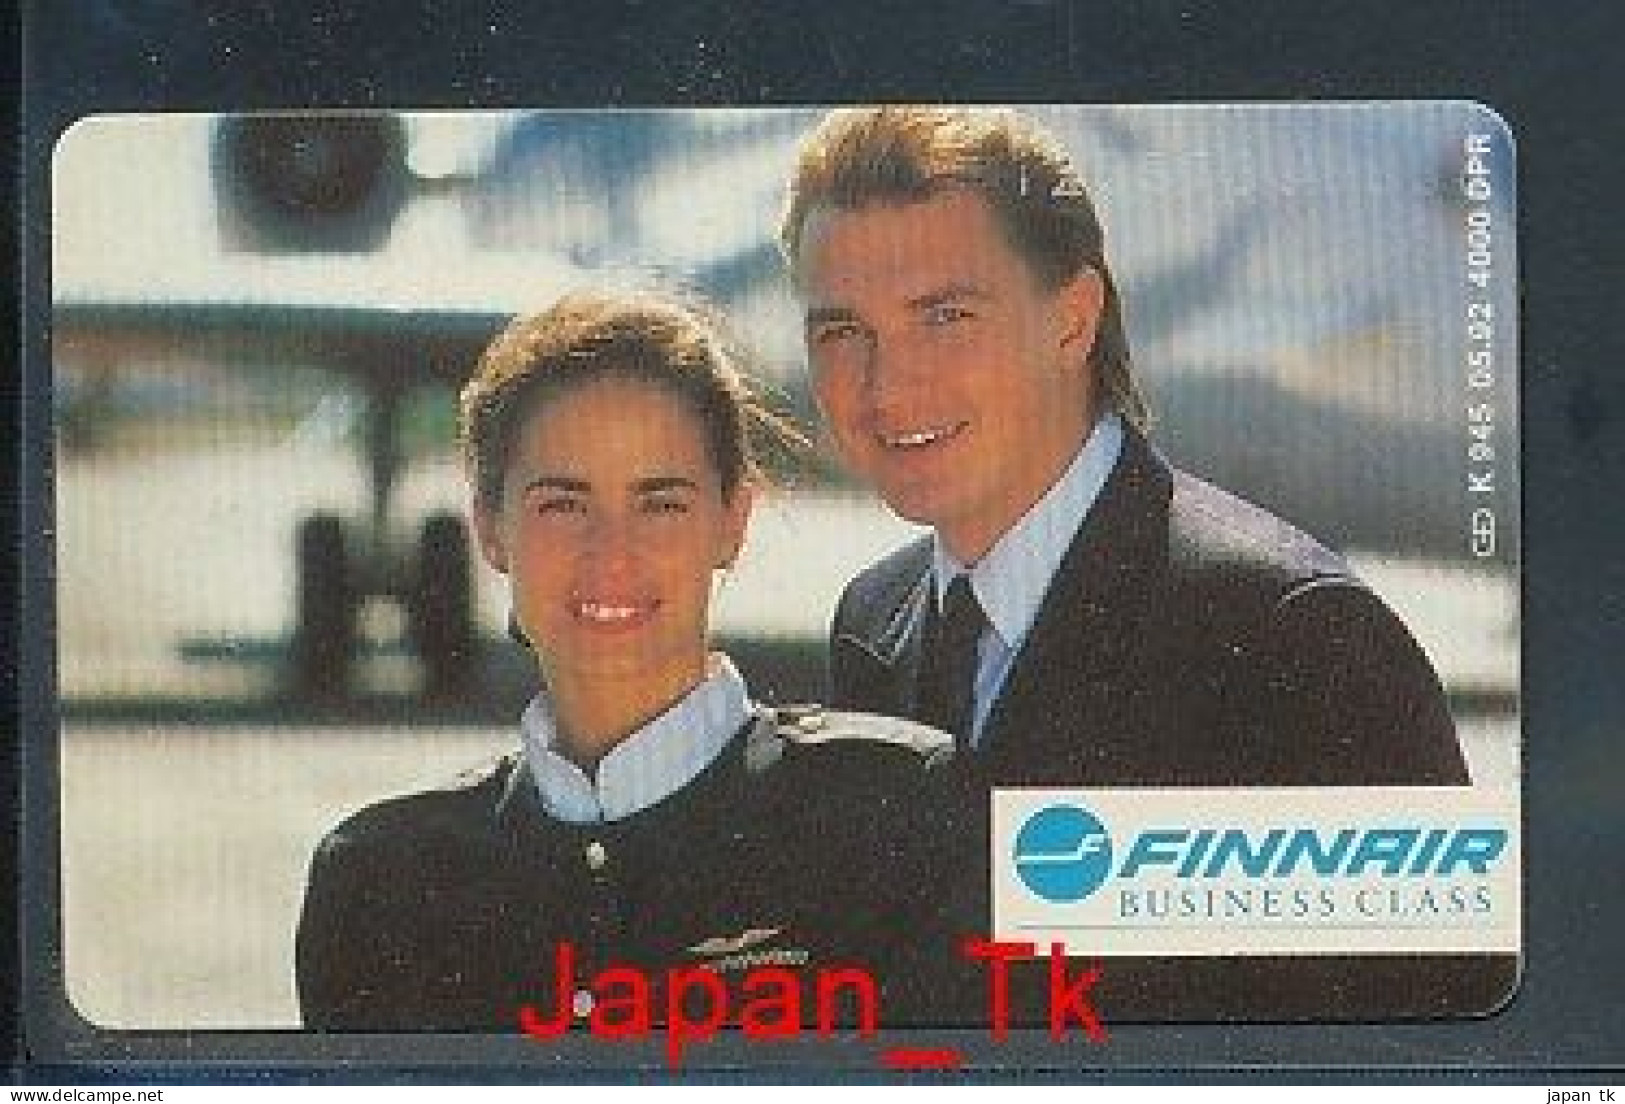 GERMANY K 945  92 Finnair   - Aufl  4 000 - Siehe Scan - K-Series : Customers Sets